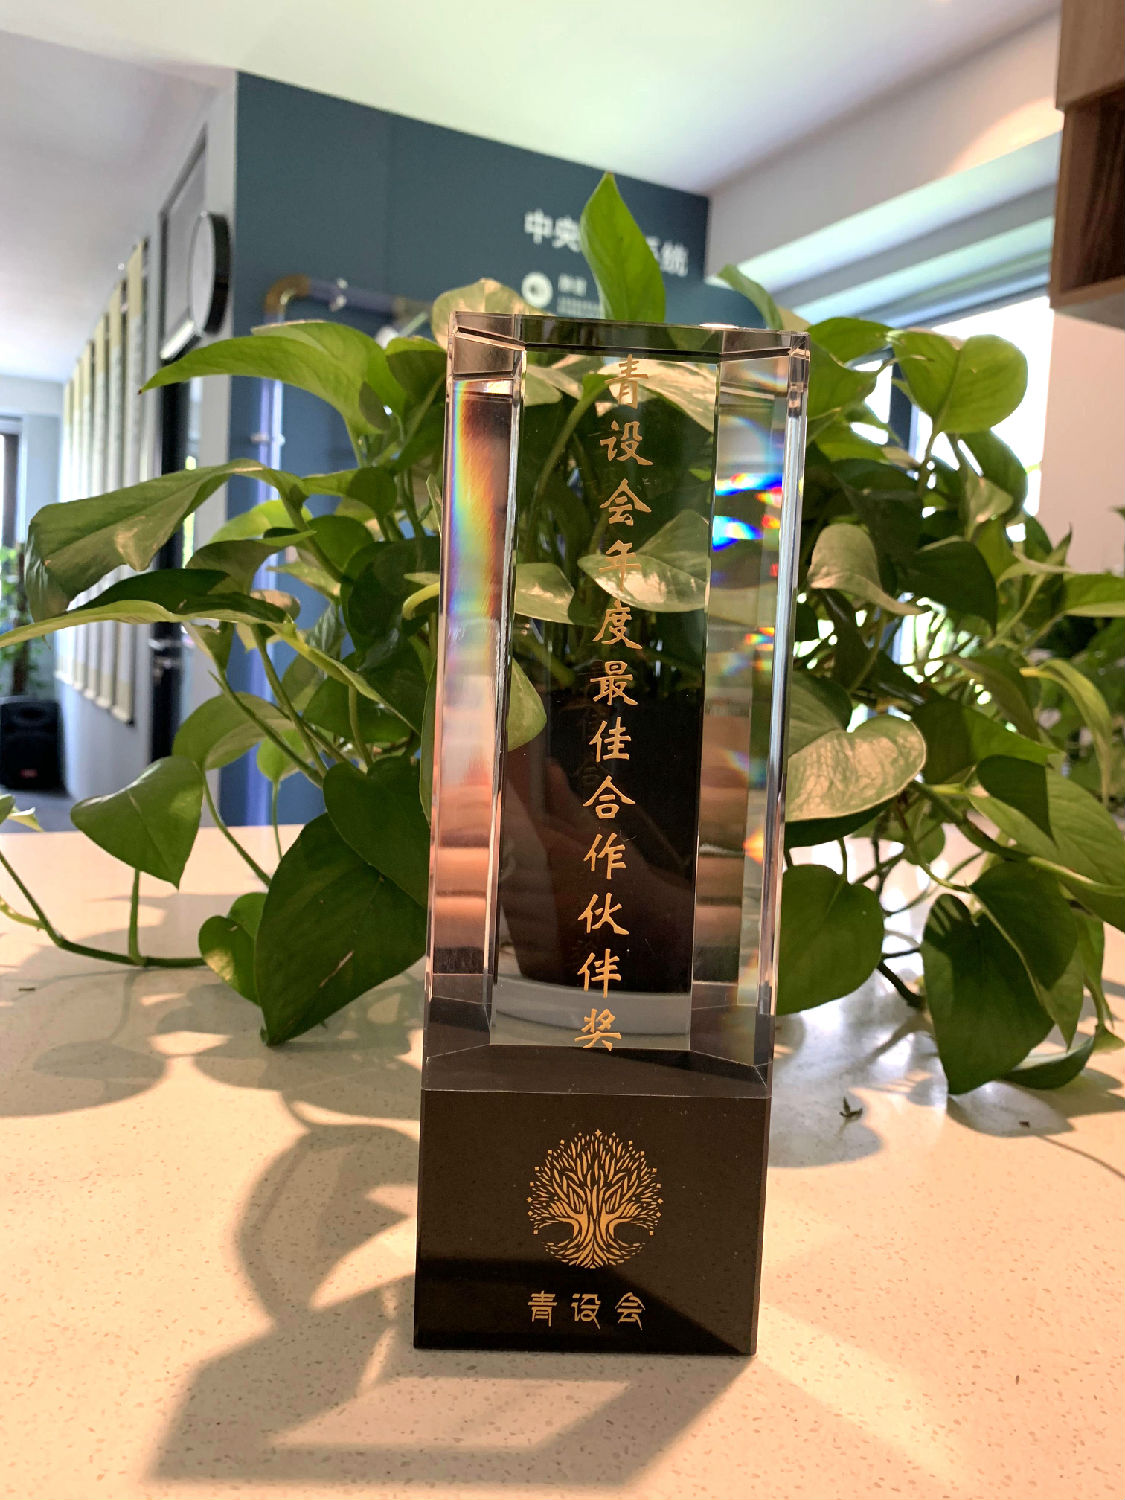 2019年日新环境荣获青设会年度最佳合作伙伴奖